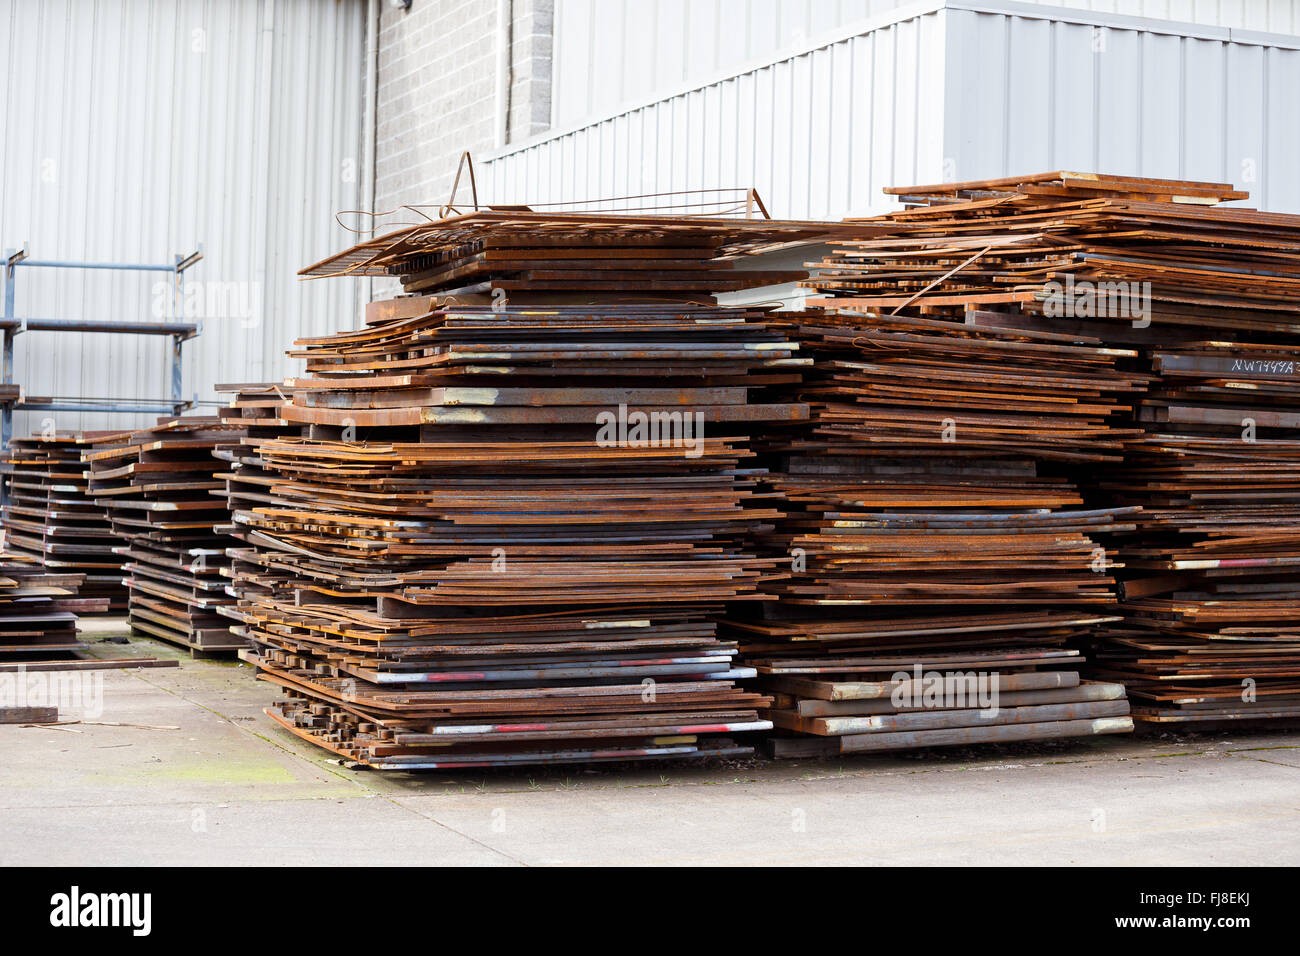 Les feuilles de métal ou fer à repasser en piles à un chantier prêt pour un projet de fabrication. Banque D'Images